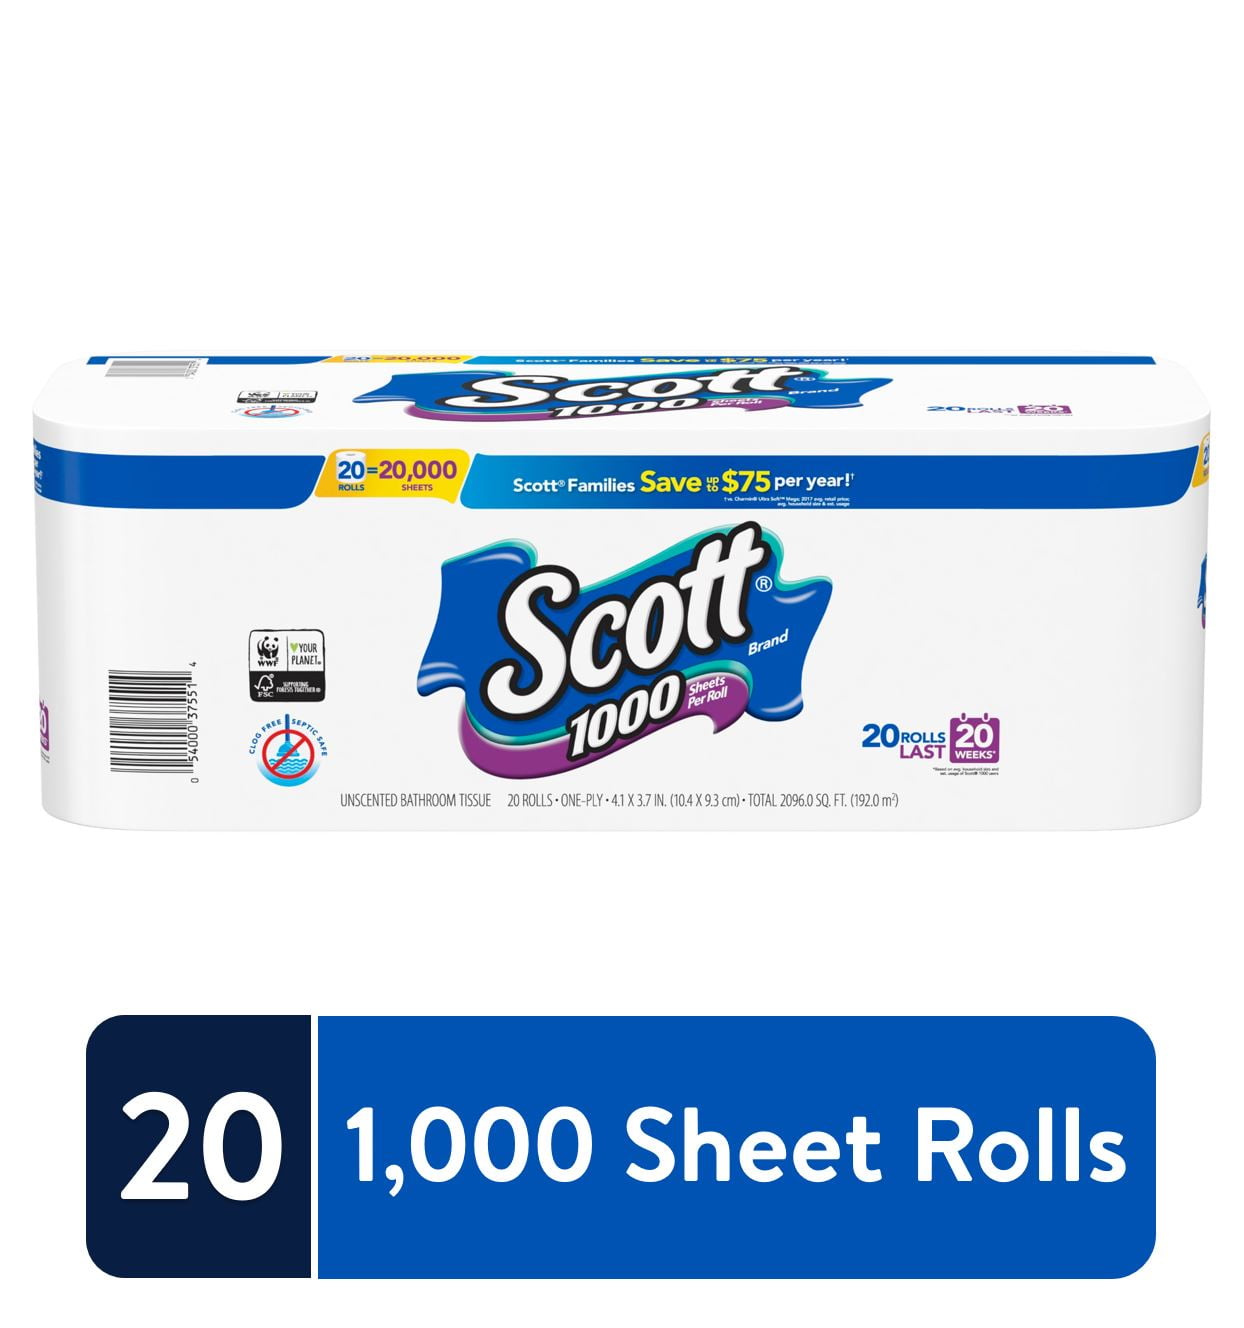 Scott 1000 Toilet Paper 20 Rolls 20 000 Sheets Walmart Com